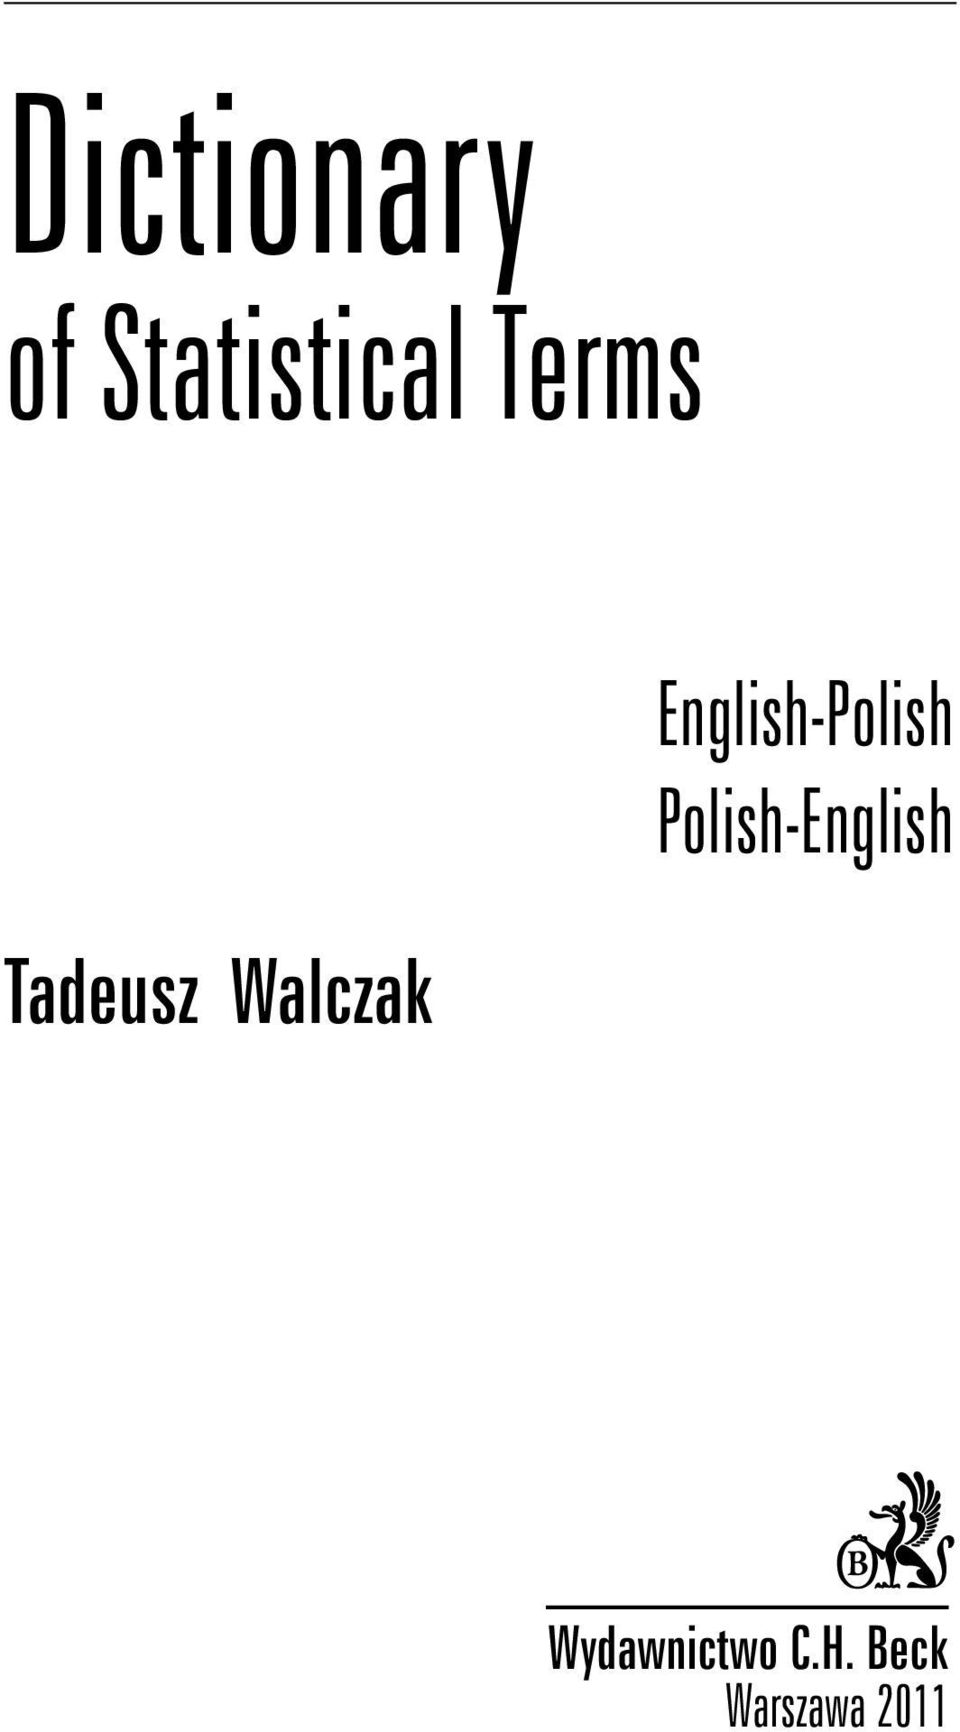 English-Polish